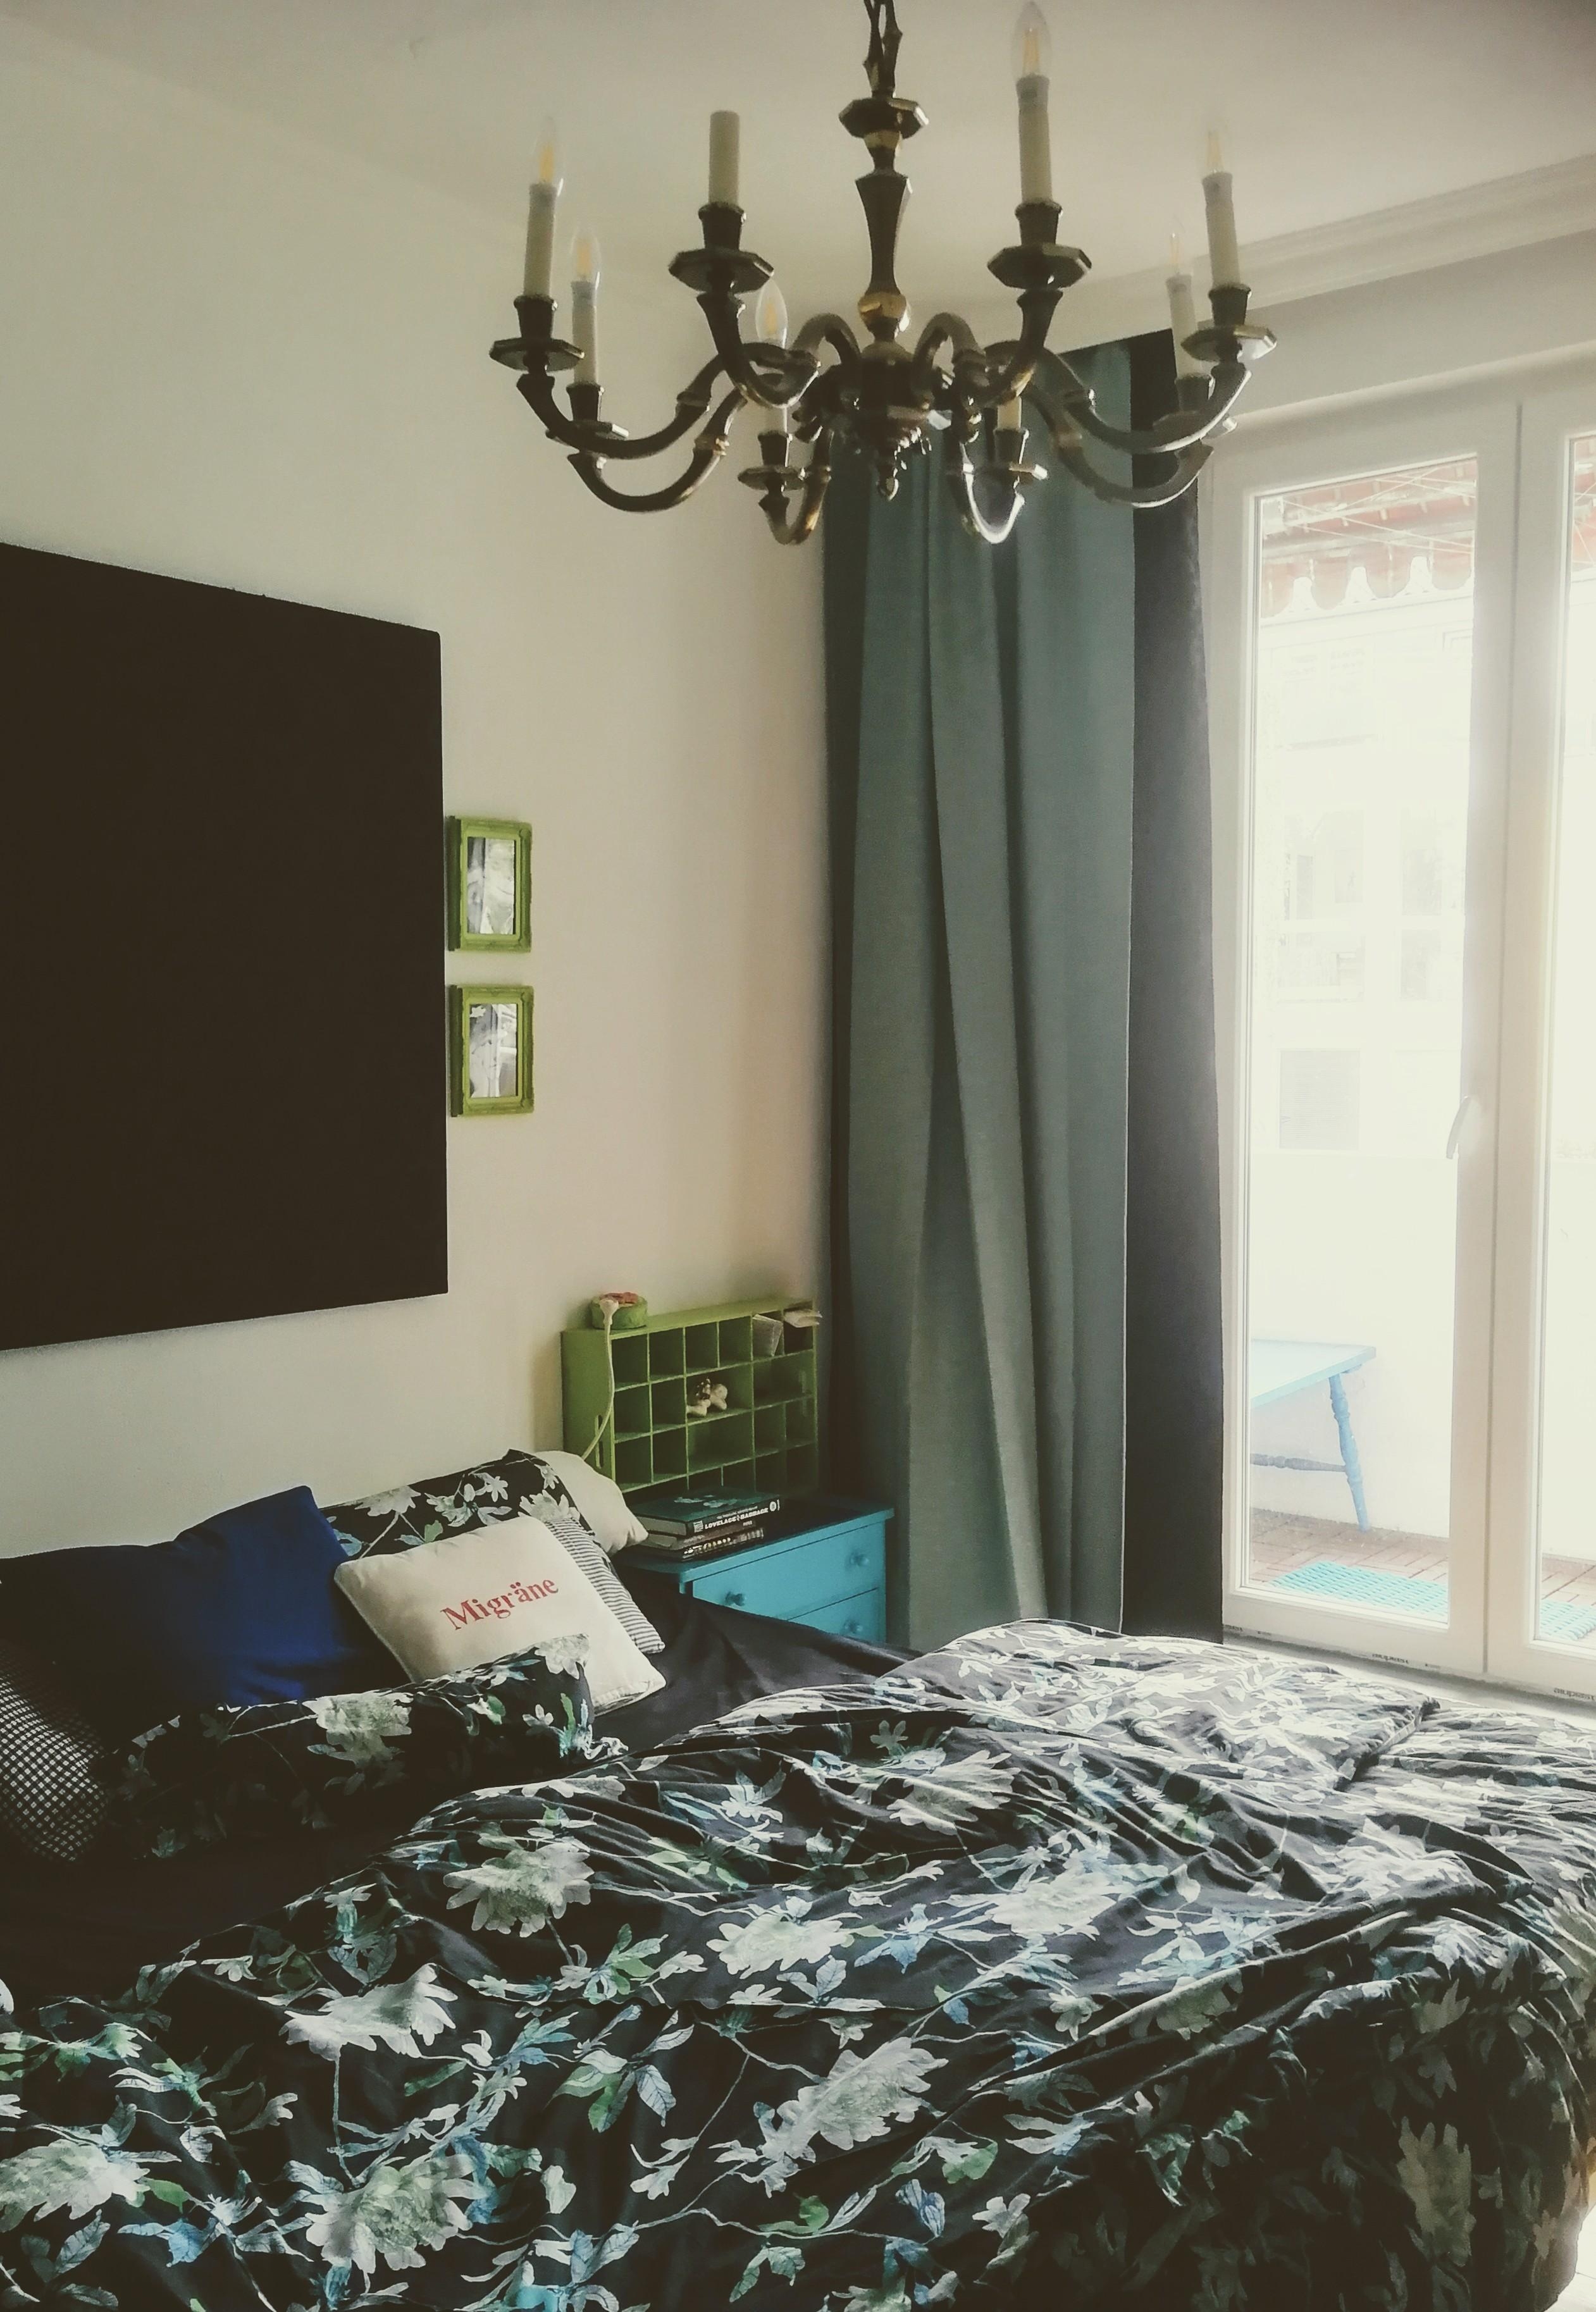 Ein aufgeräumtes #schlafzimmer kommt ja selten genug vor 🙈... #kronleuchter #colourful #blumenbettwäsche